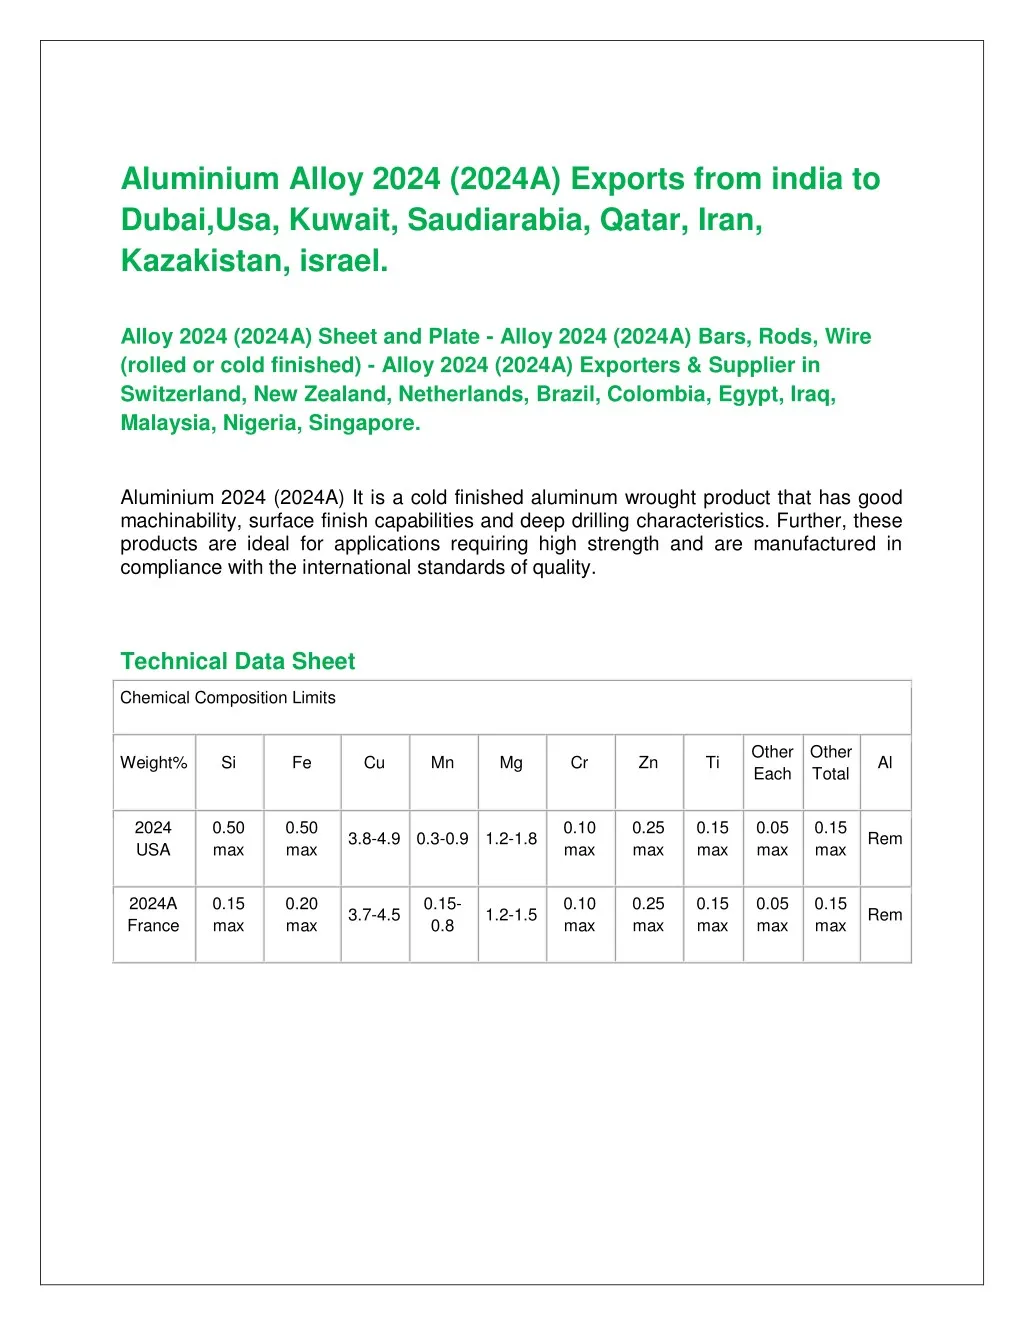 aluminium alloy 2024 2024a exports from india